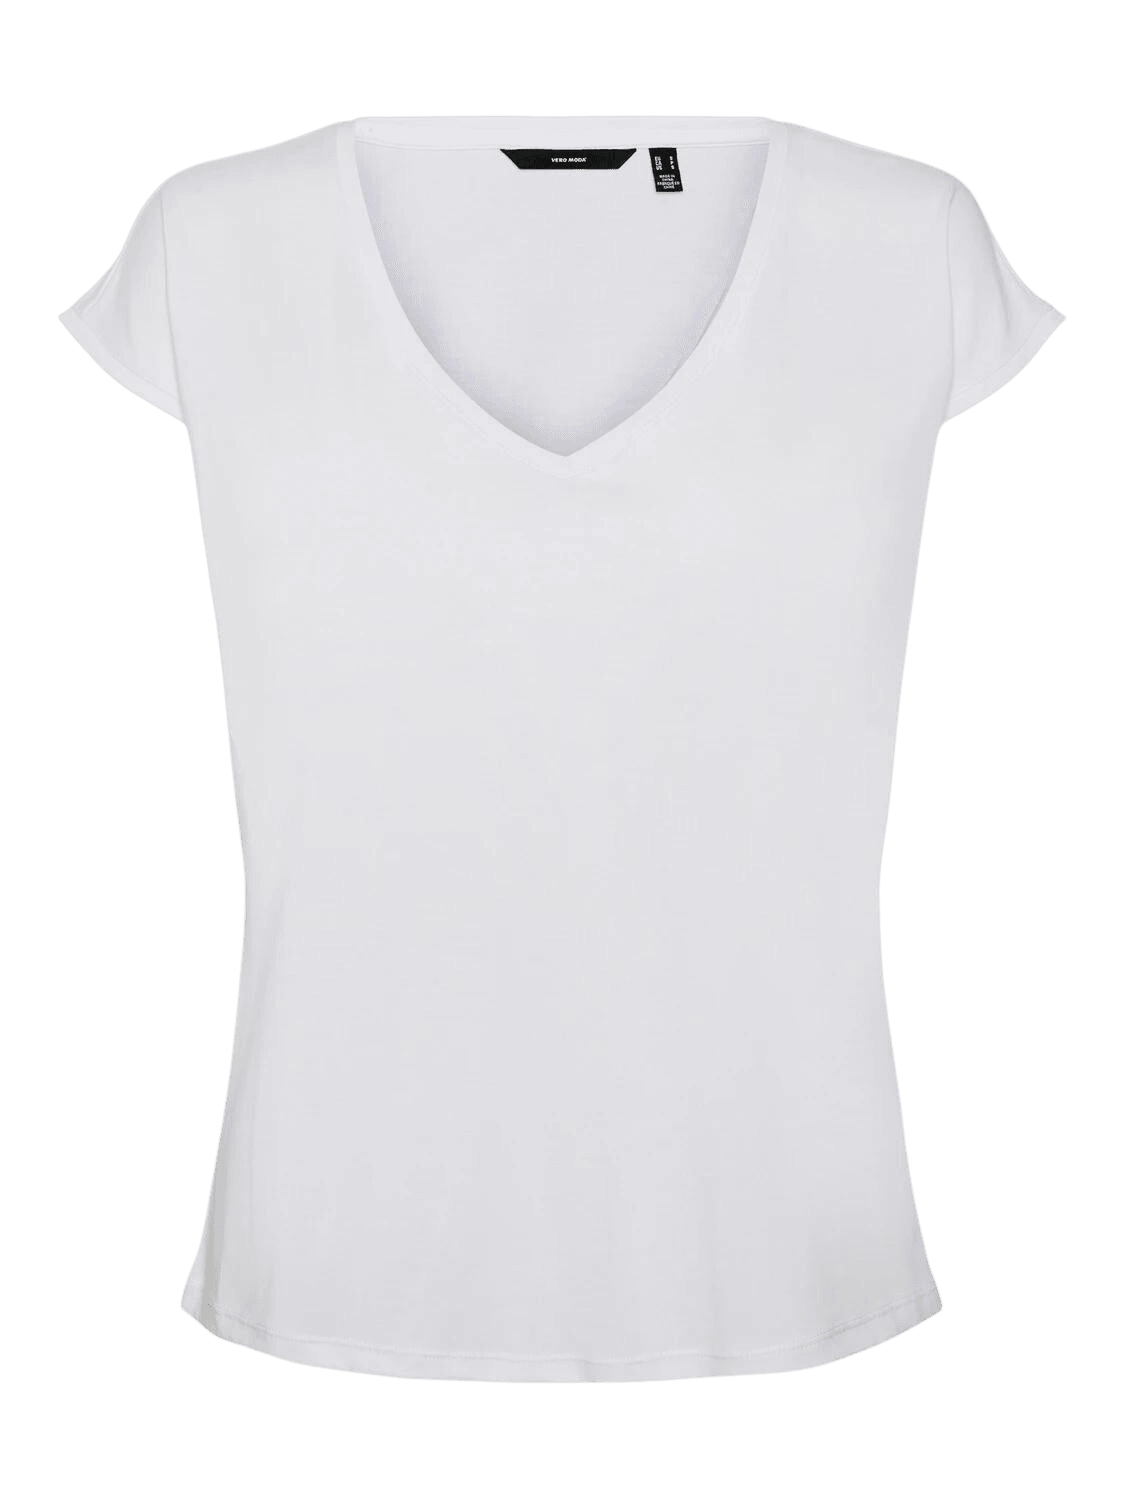 Camiseta Filli Básica de Mujer Vero Moda Cuello Pico Snow White - ECRU